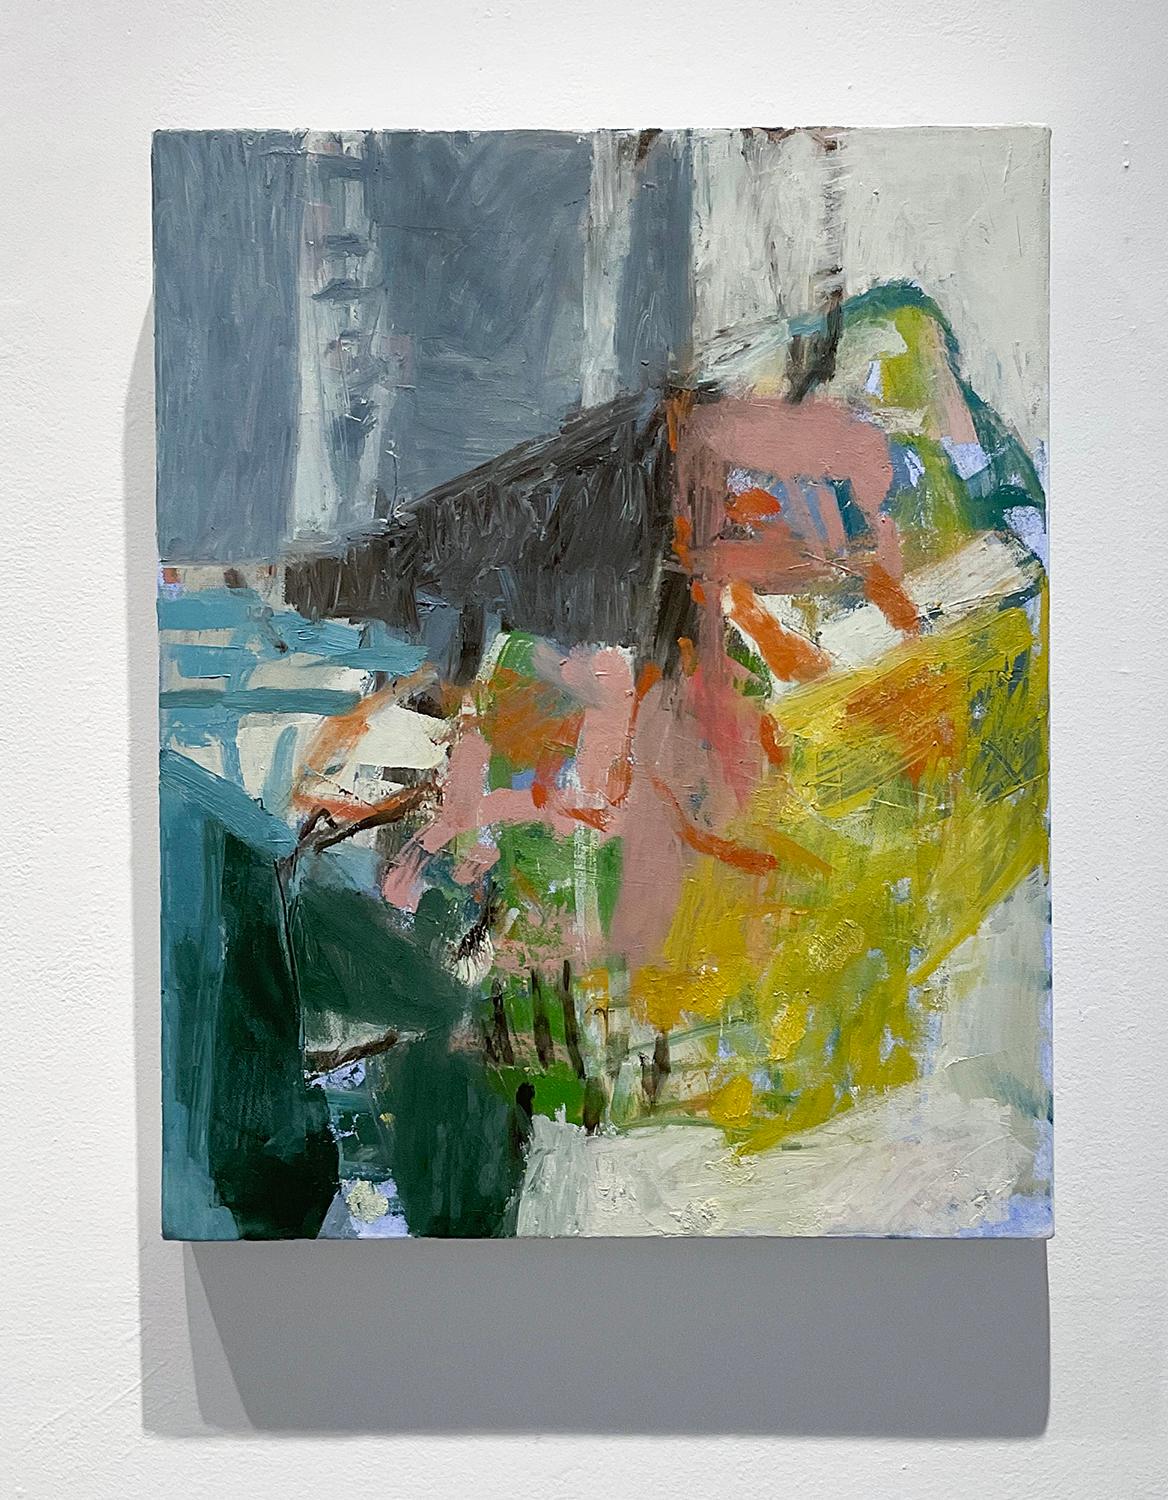 What Do I know of This Place 1 (peinture expressionniste abstraite sur toile - Qu'est-ce que je sais de ce lieu)  - Painting de Jenny Nelson